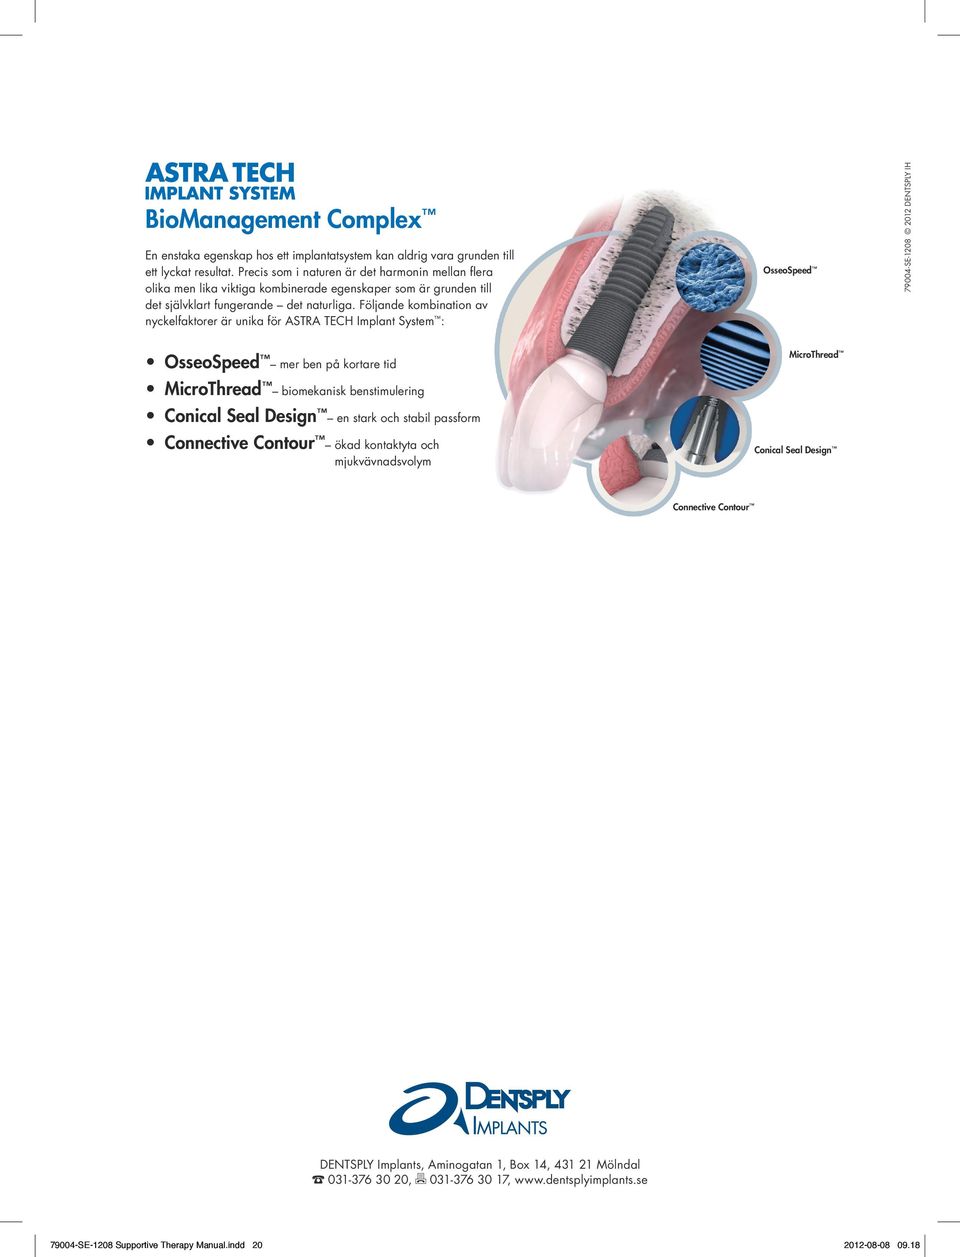 Följande kombination av nyckelfaktorer är unika för ASTRA TECH Implant System : OsseoSpeed 79004-SE-1208 2012 DENTSPLY IH OsseoSpeed mer ben på kortare tid MicroThread biomekanisk benstimulering